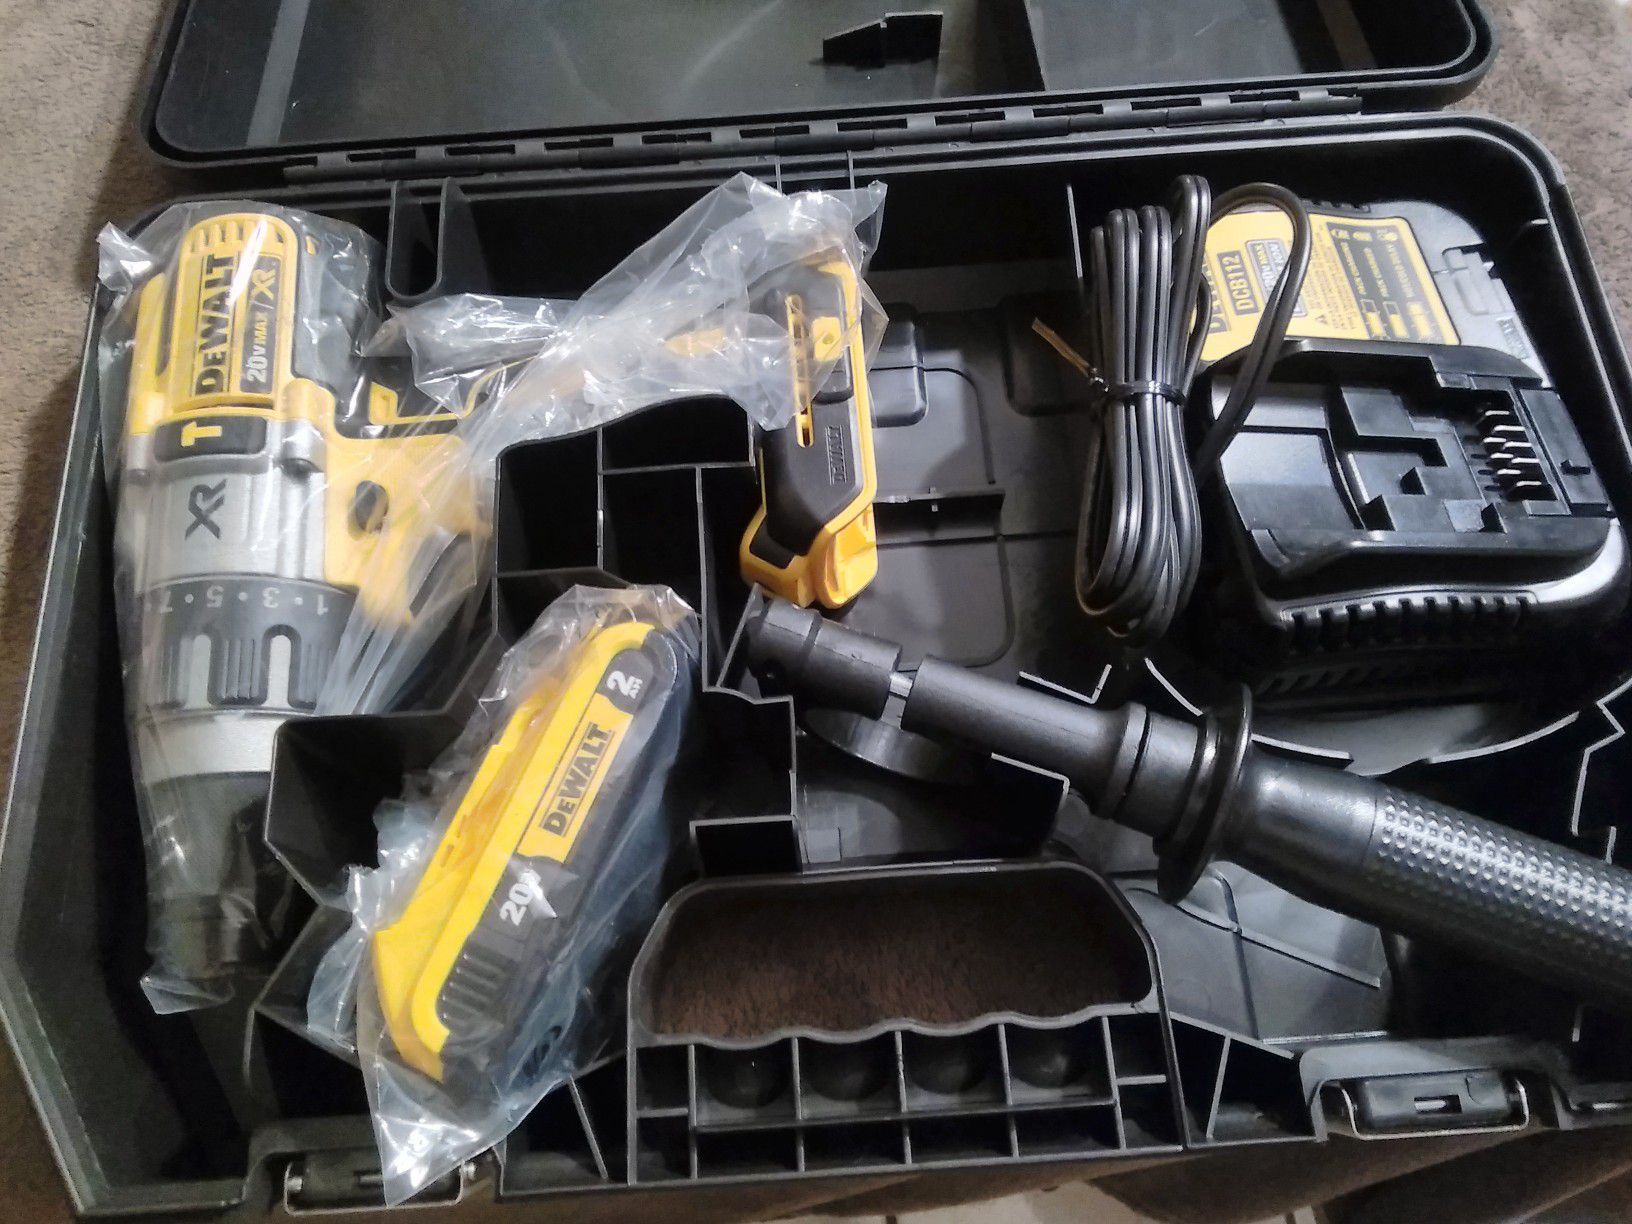 New DeWalt 20 v XR brushless 3 speed hammer drill kit in hard case